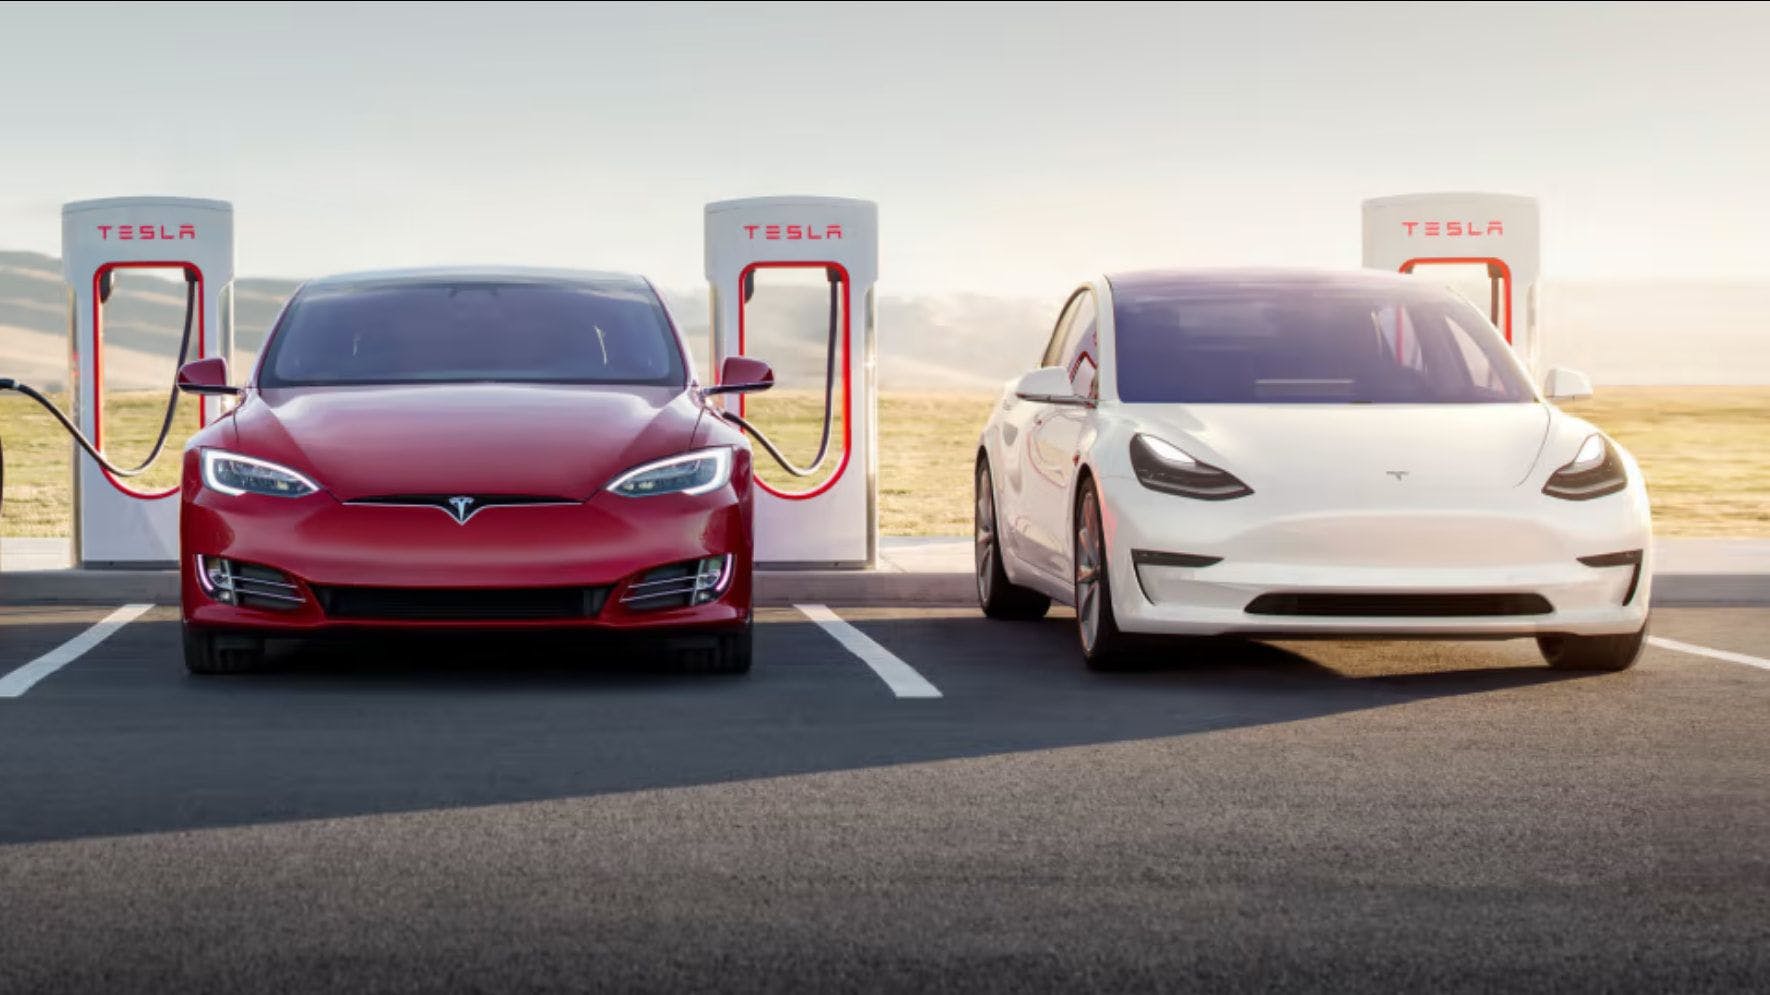 Tesla model 3 charging at supercharger